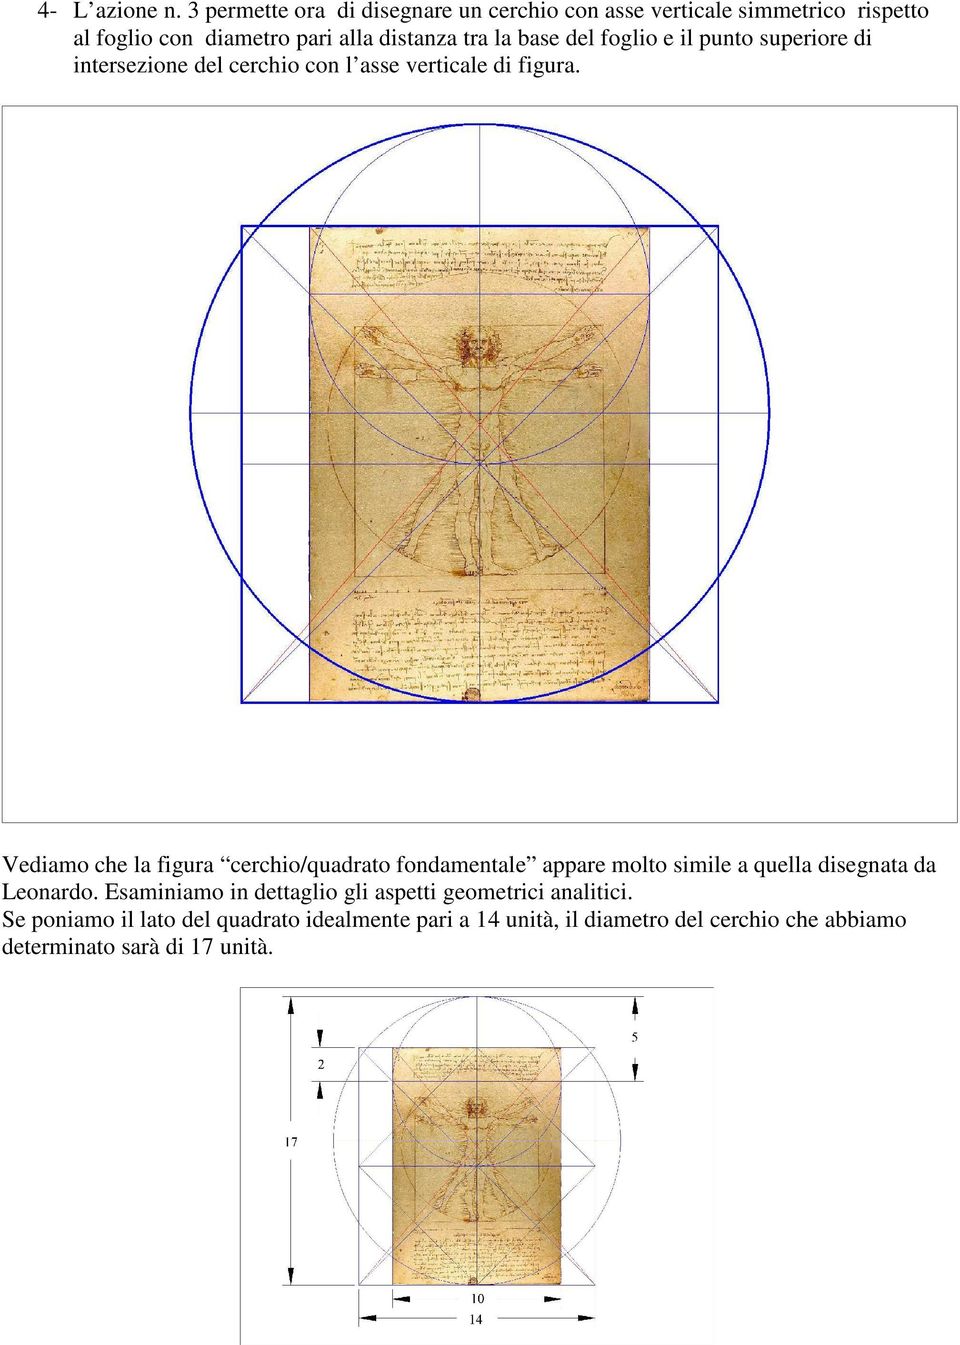 del foglio e il punto superiore di intersezione del cerchio con l asse verticale di figura.